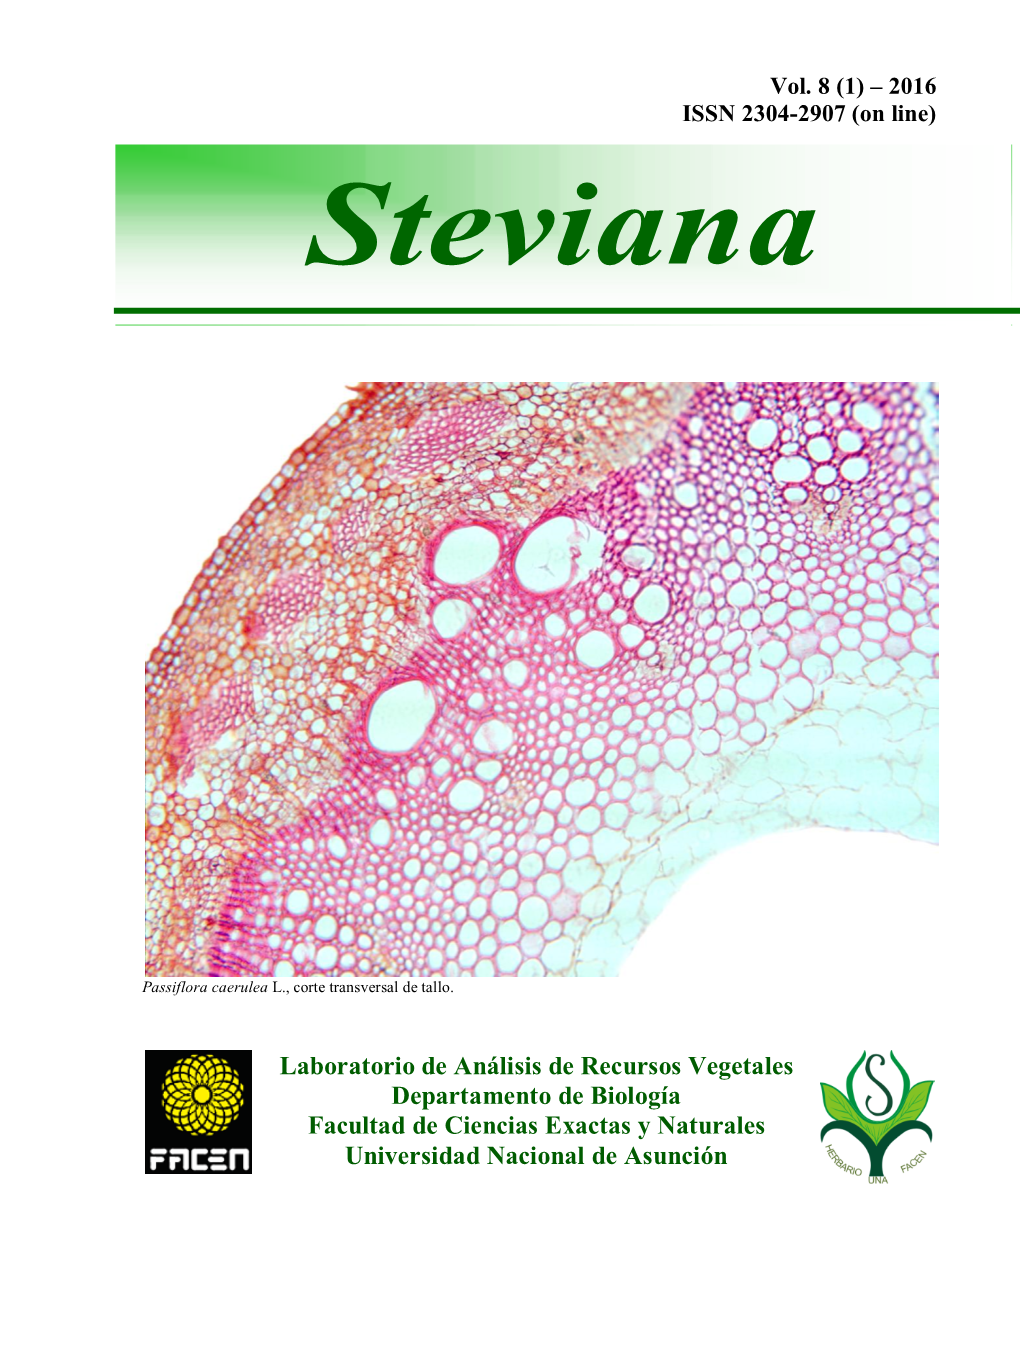 Steviana, Vol. 8 (1), 2016